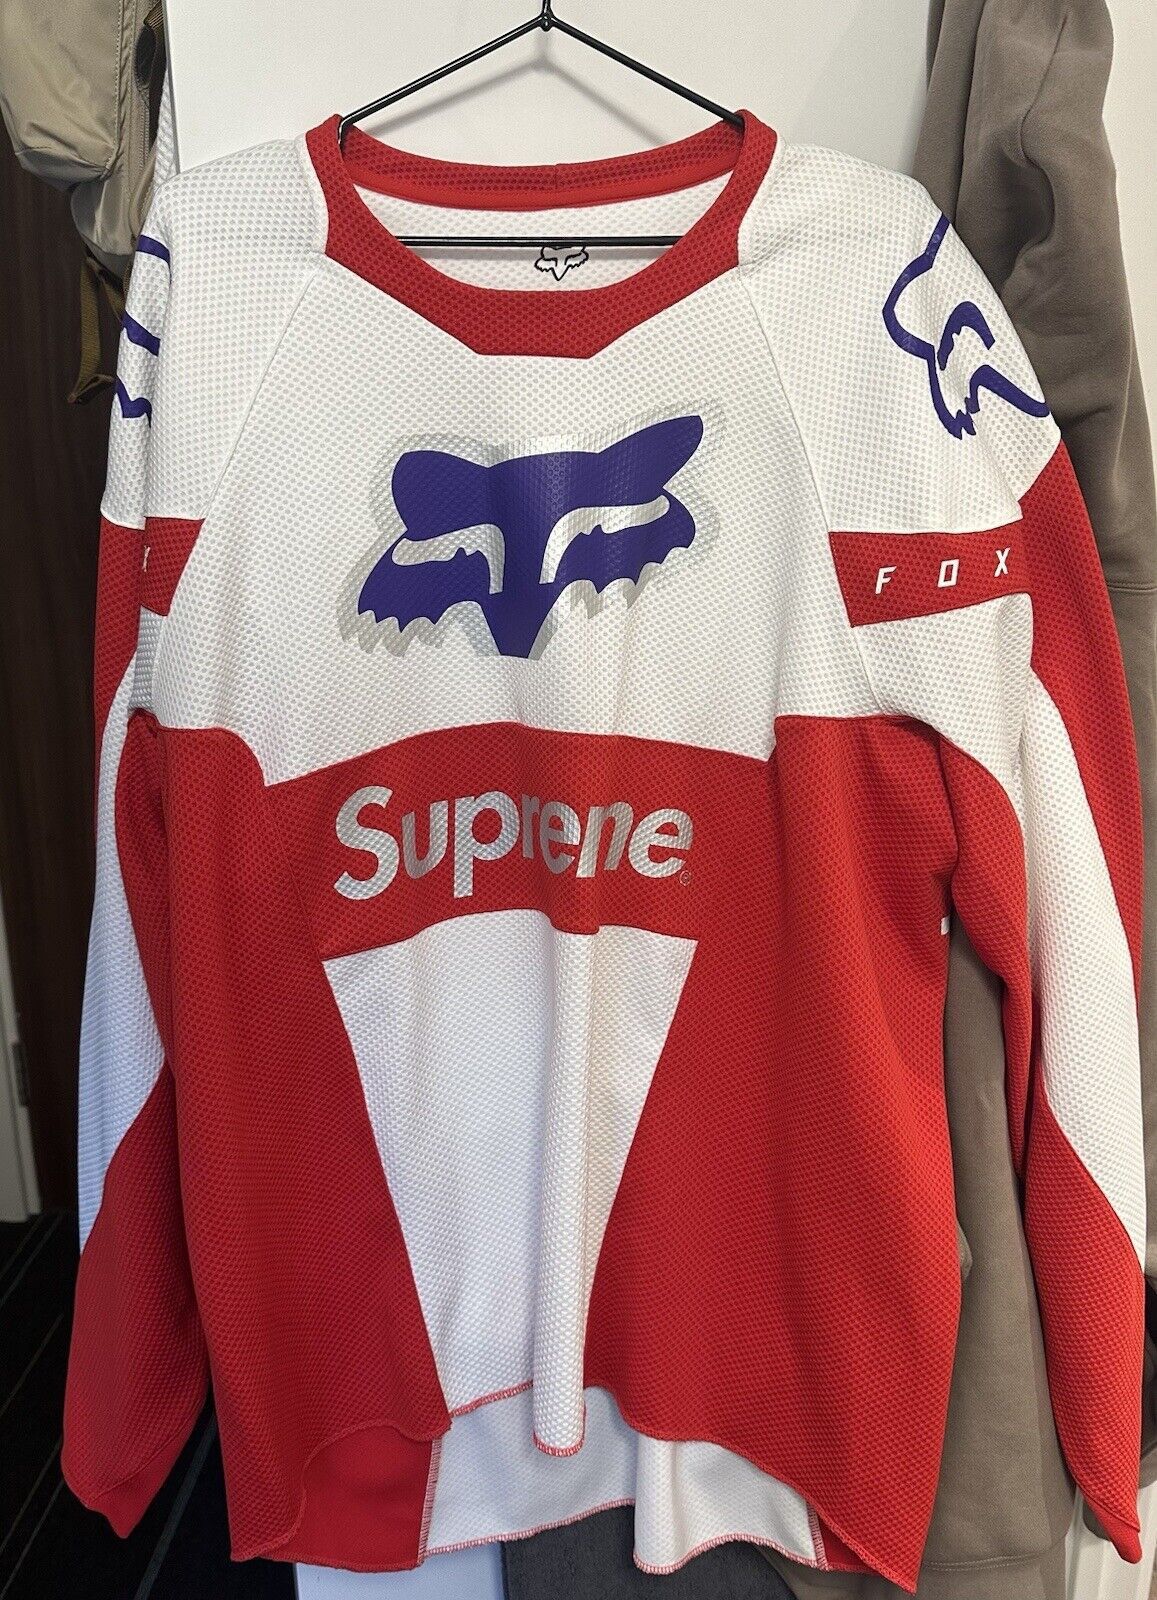 Supreme Supreme Fox Racing Jersey SS18 | Grailed